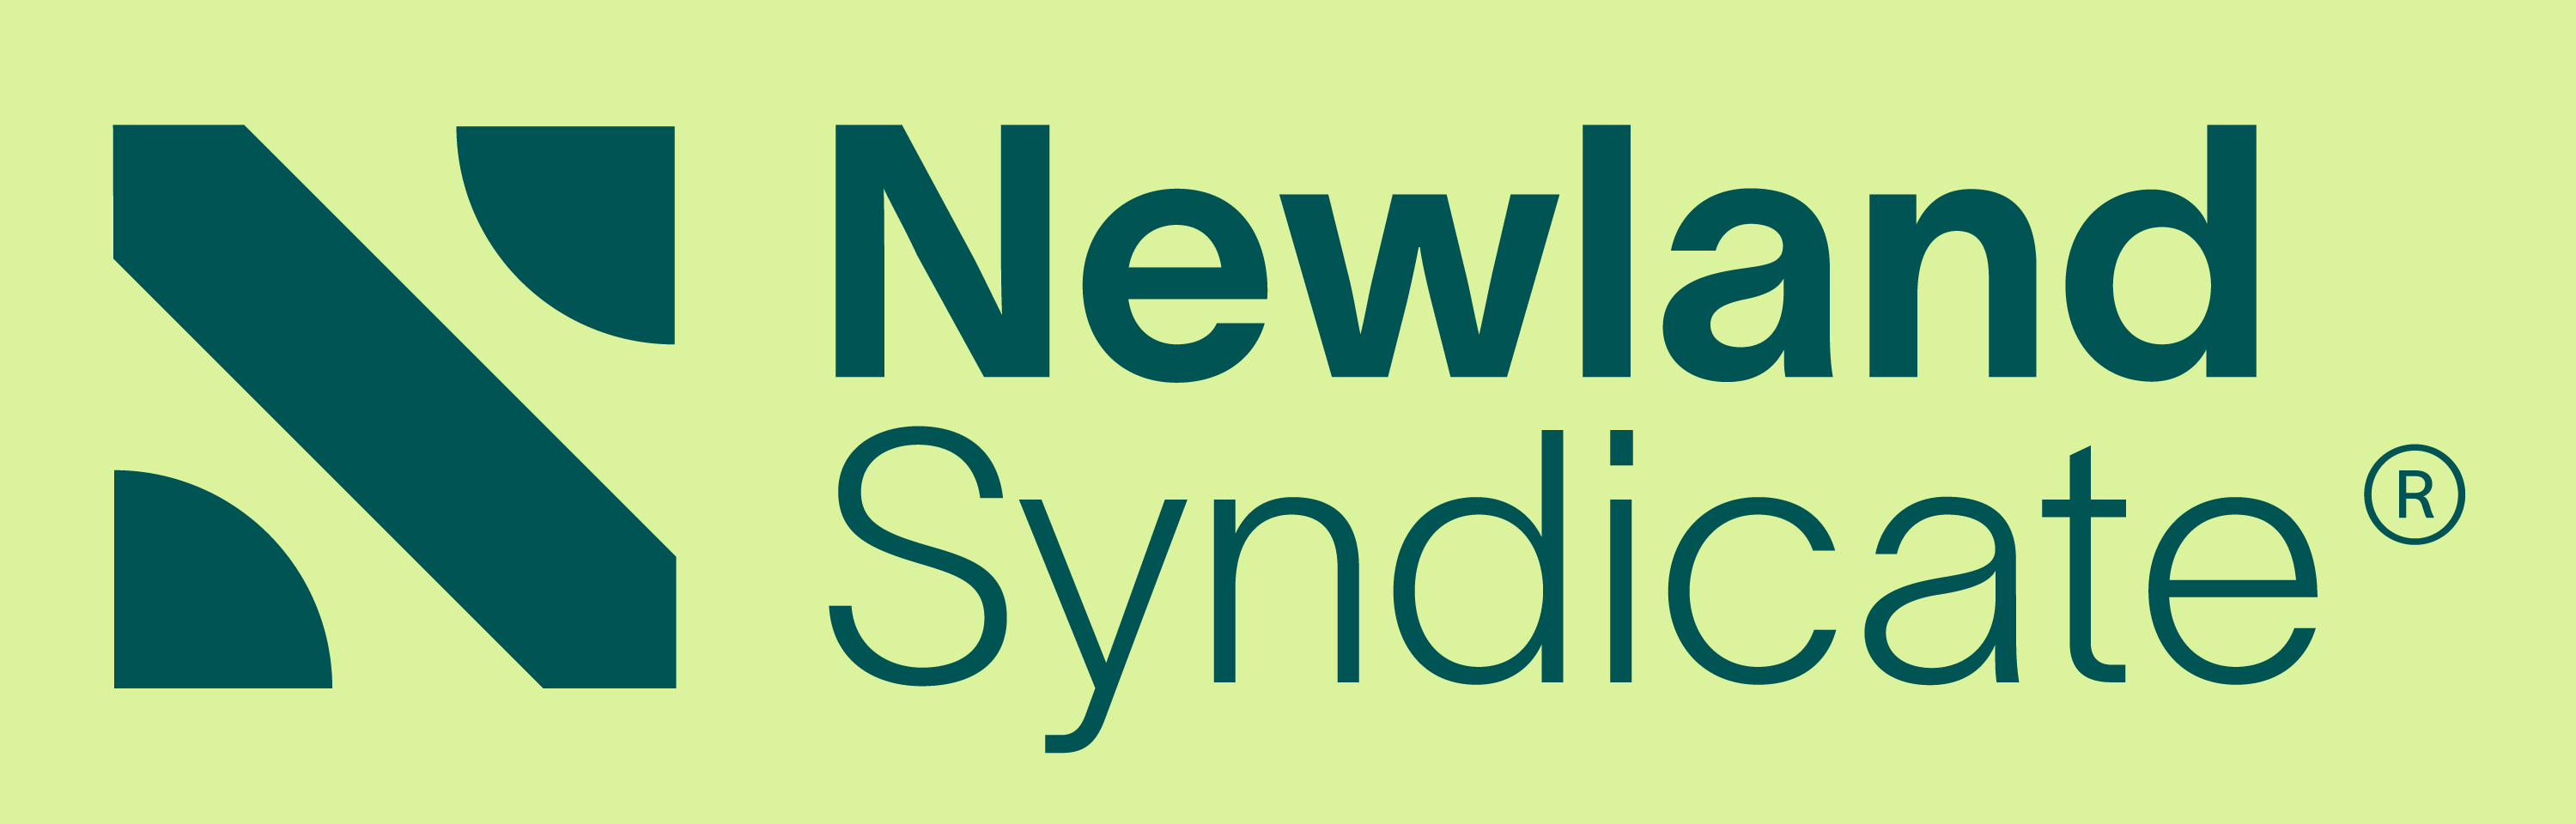 Newland Syndicate logo